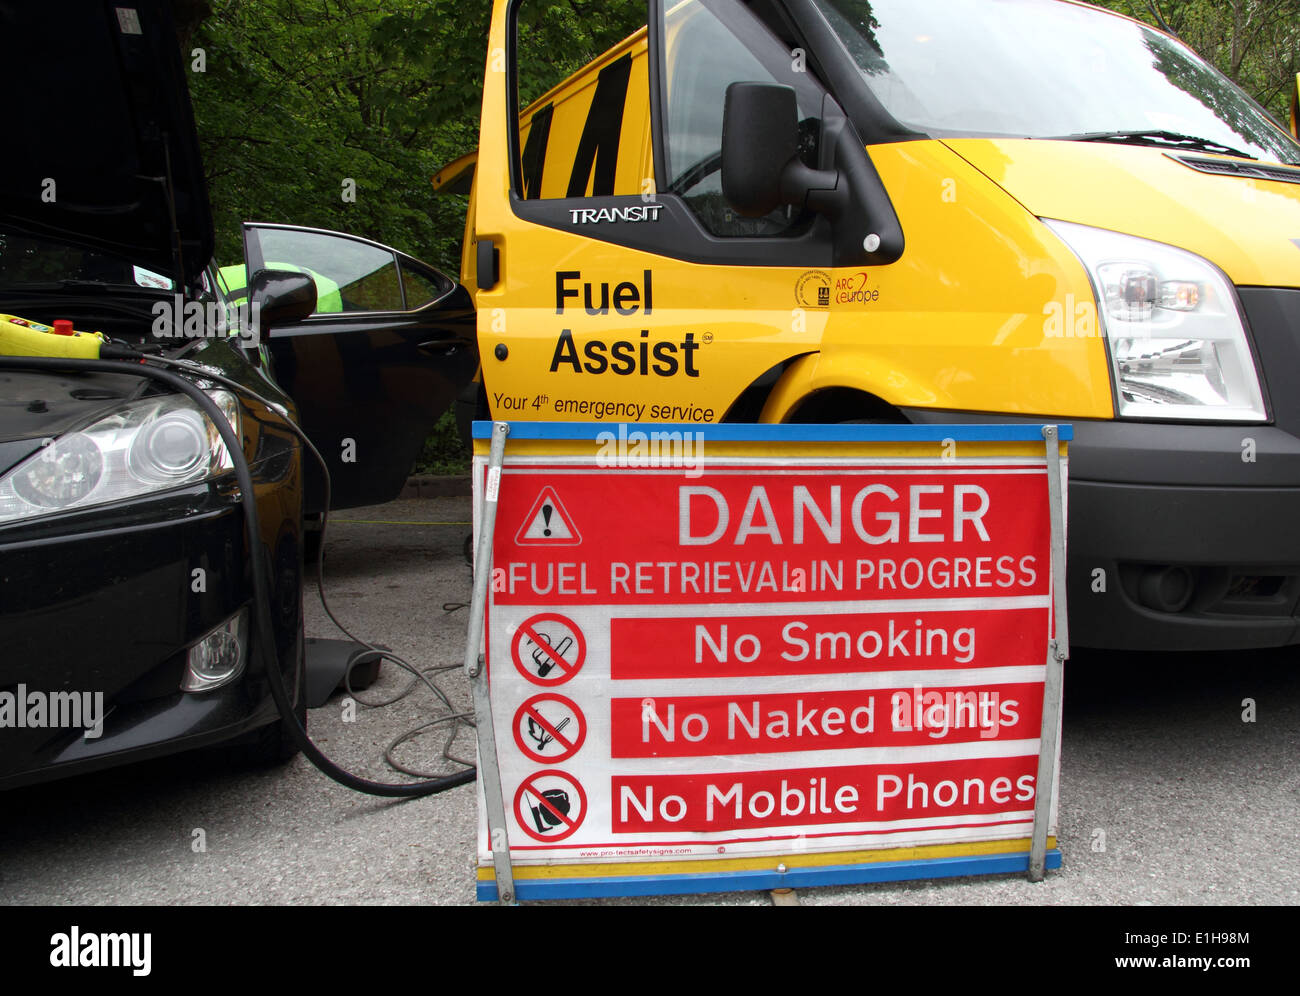 Ein Auto mit den falschen Kraftstoff gefüllt wird entwässert durch einen AA (Automobile Association) Kraftstoff unterstützen Techniker, England, UK Stockfoto